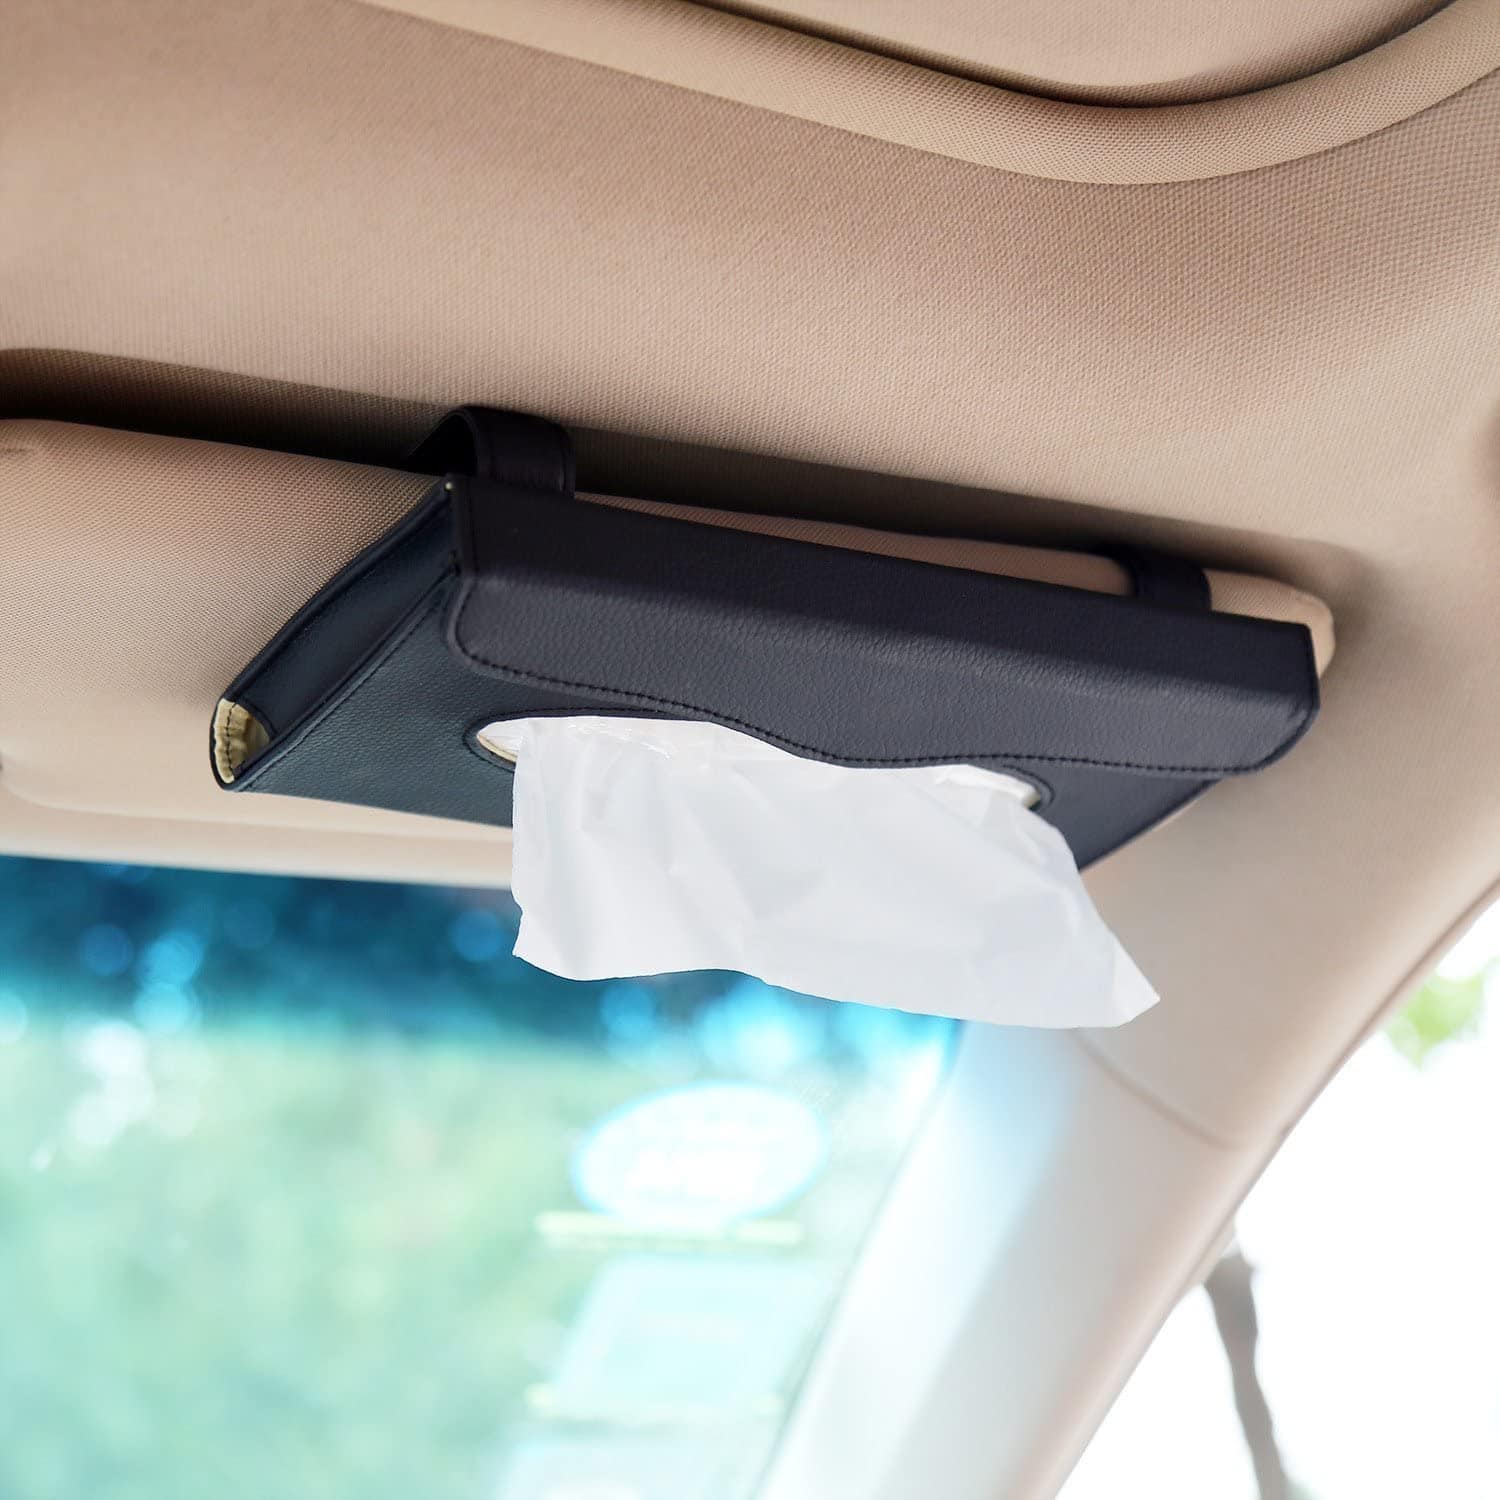 Visor tissue holder for cars. Perfect for road trips